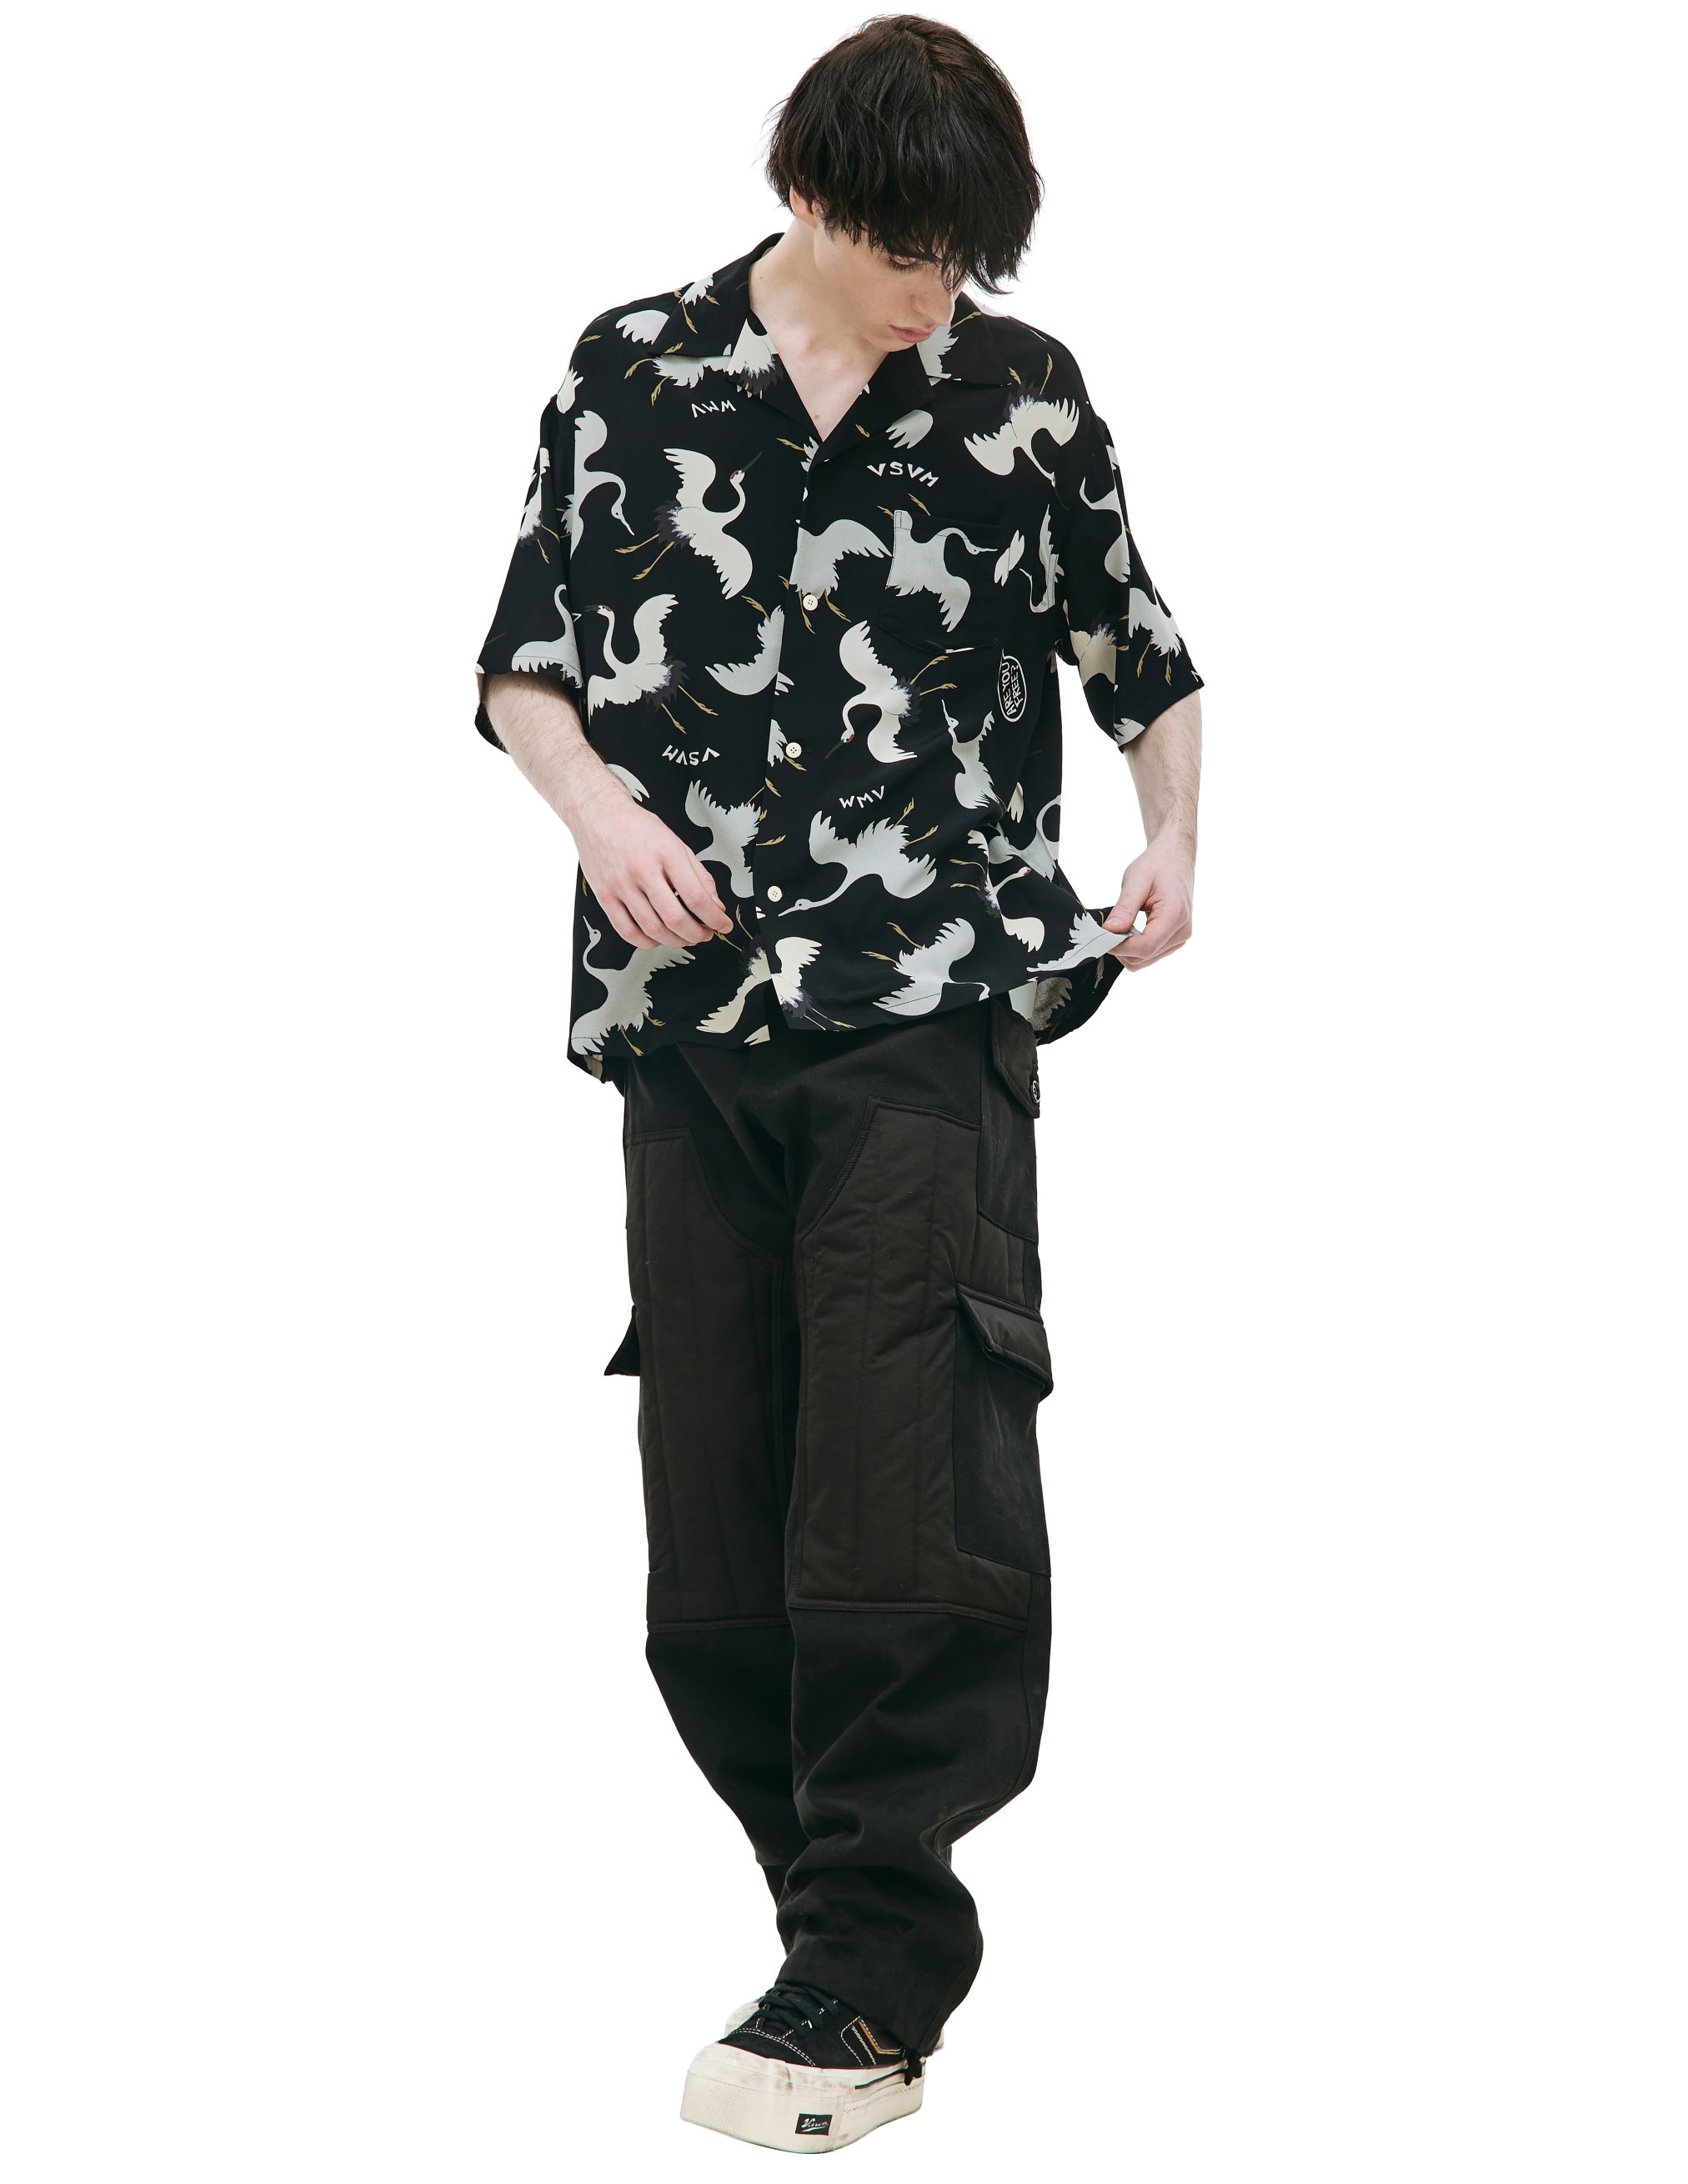 Рубашка Crosby с коротким рукавом visvim 0123105011018, размер 4